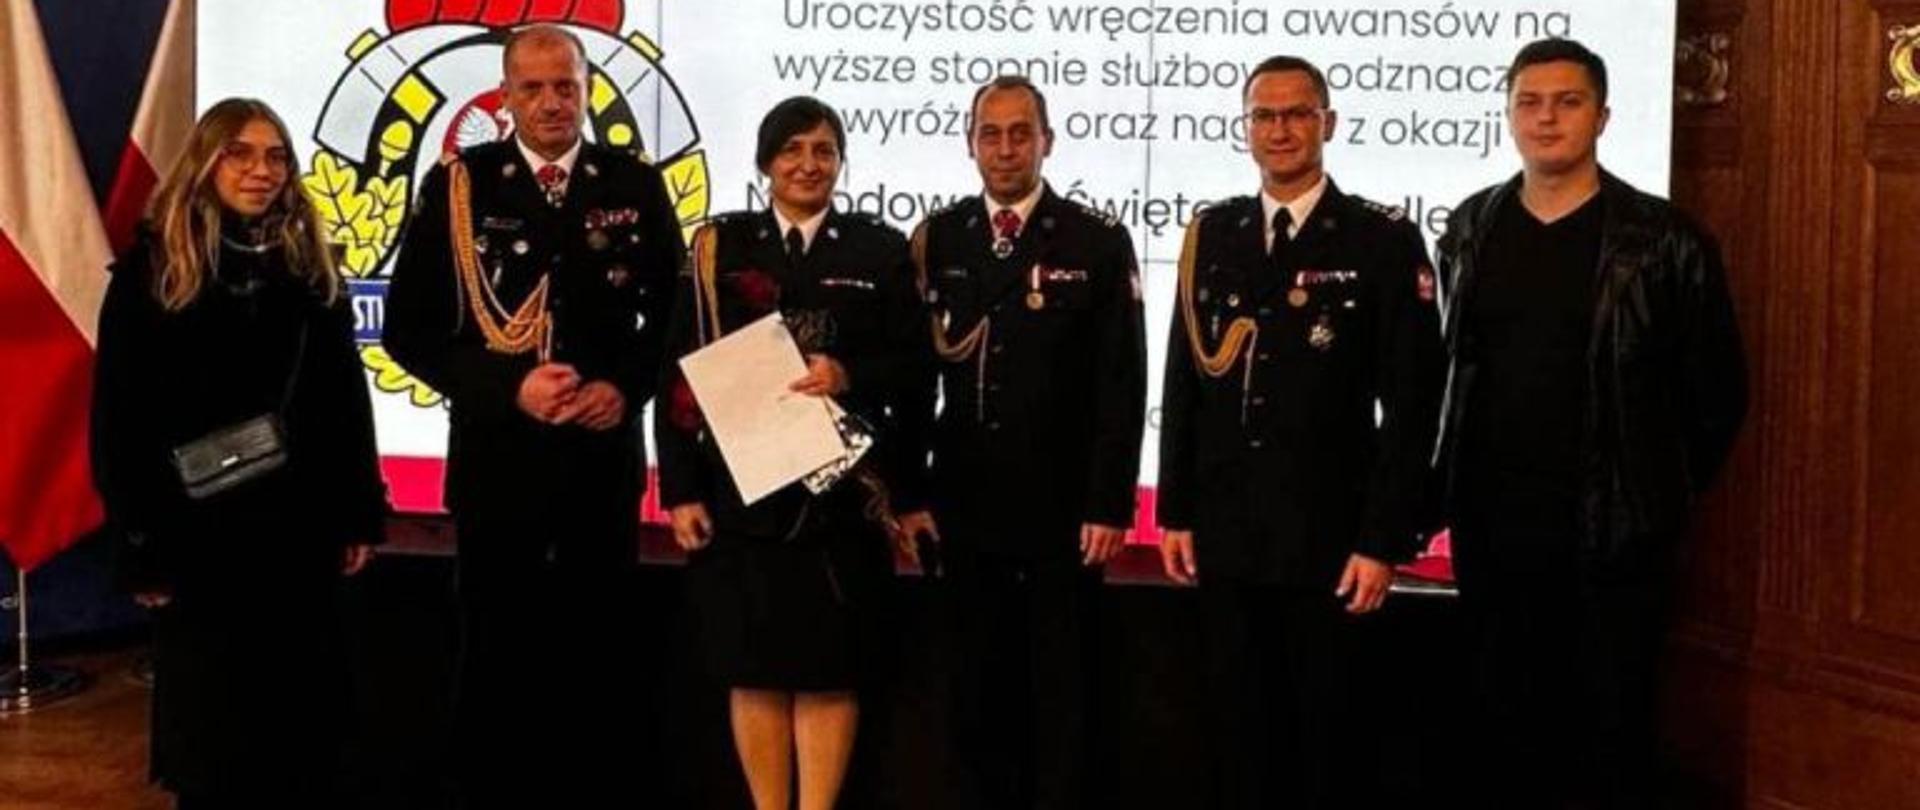 Zdjęcie wykonane na Sali Rycerskiej w Urzędzie Wojewódzkim w Szczecinie. W szeregu stoją strażacy w mundurach galowych. Wśród strażaków awansowana Anna Pedner.